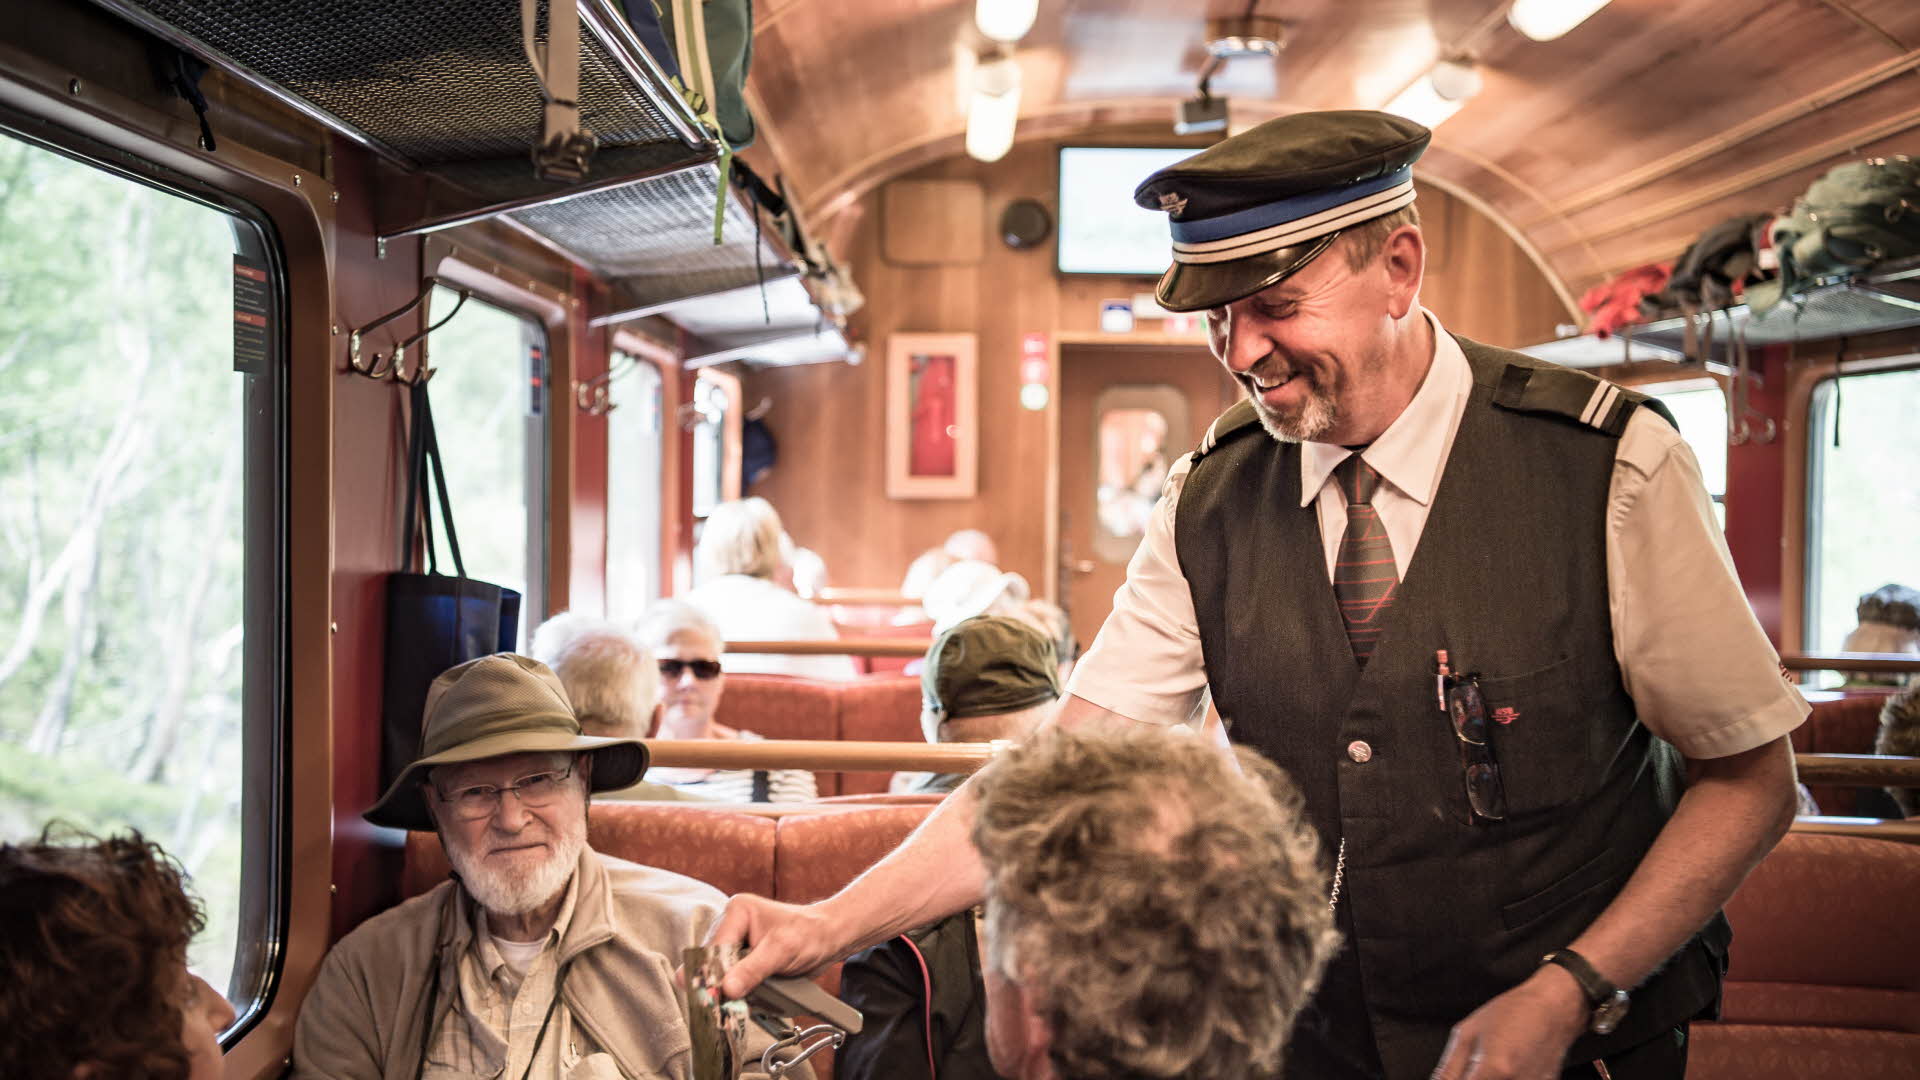 Ein lächelnder Schaffner kontrolliert die Fahrkarten dreier Touristen in der Flåmbahn